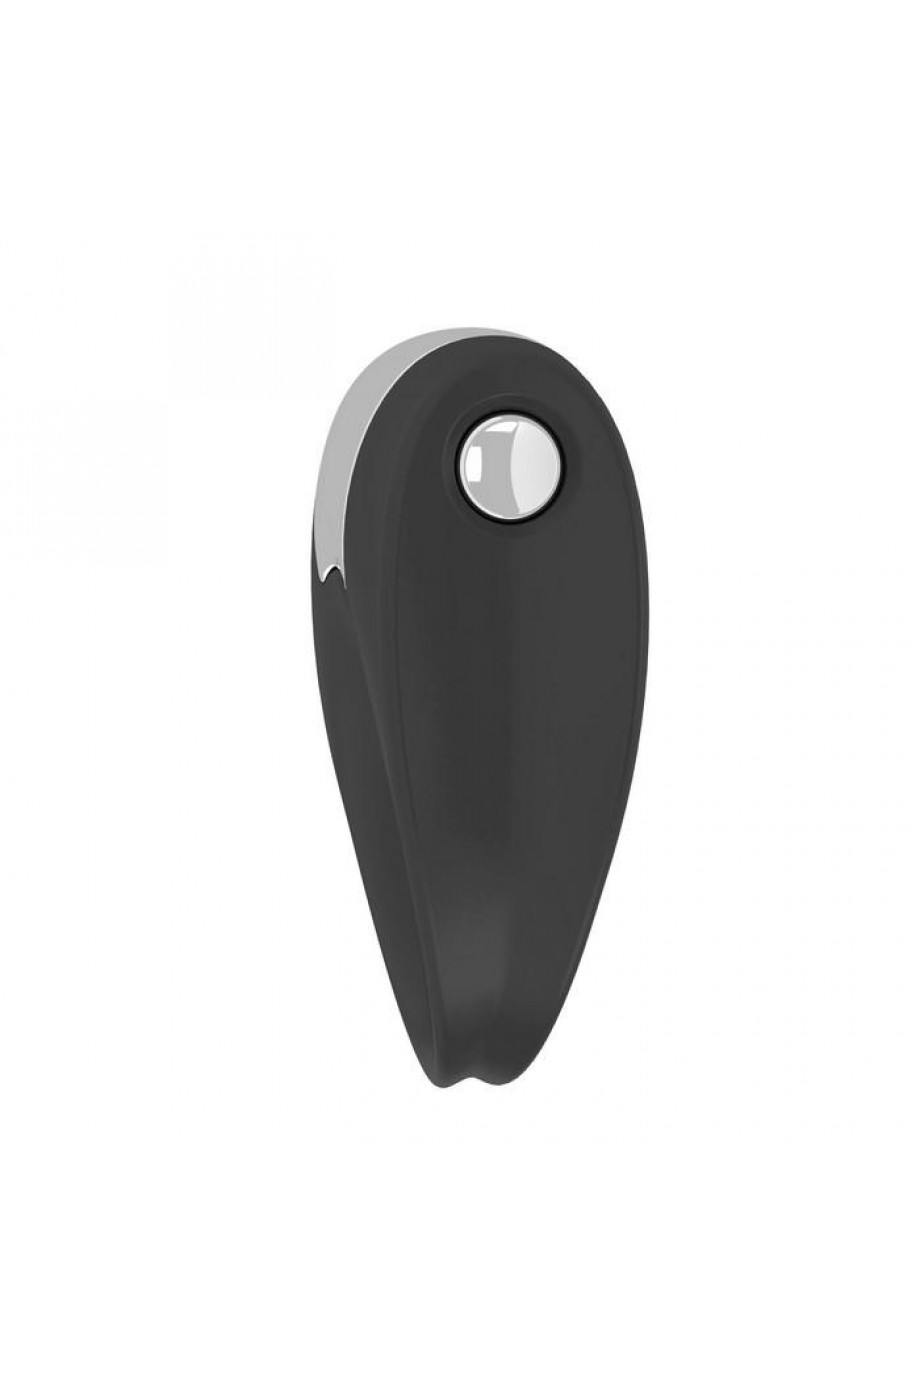 Эрекционное кольцо OVO с удобной кнопкой включения и сильной вибрацией, силиконовое, черное